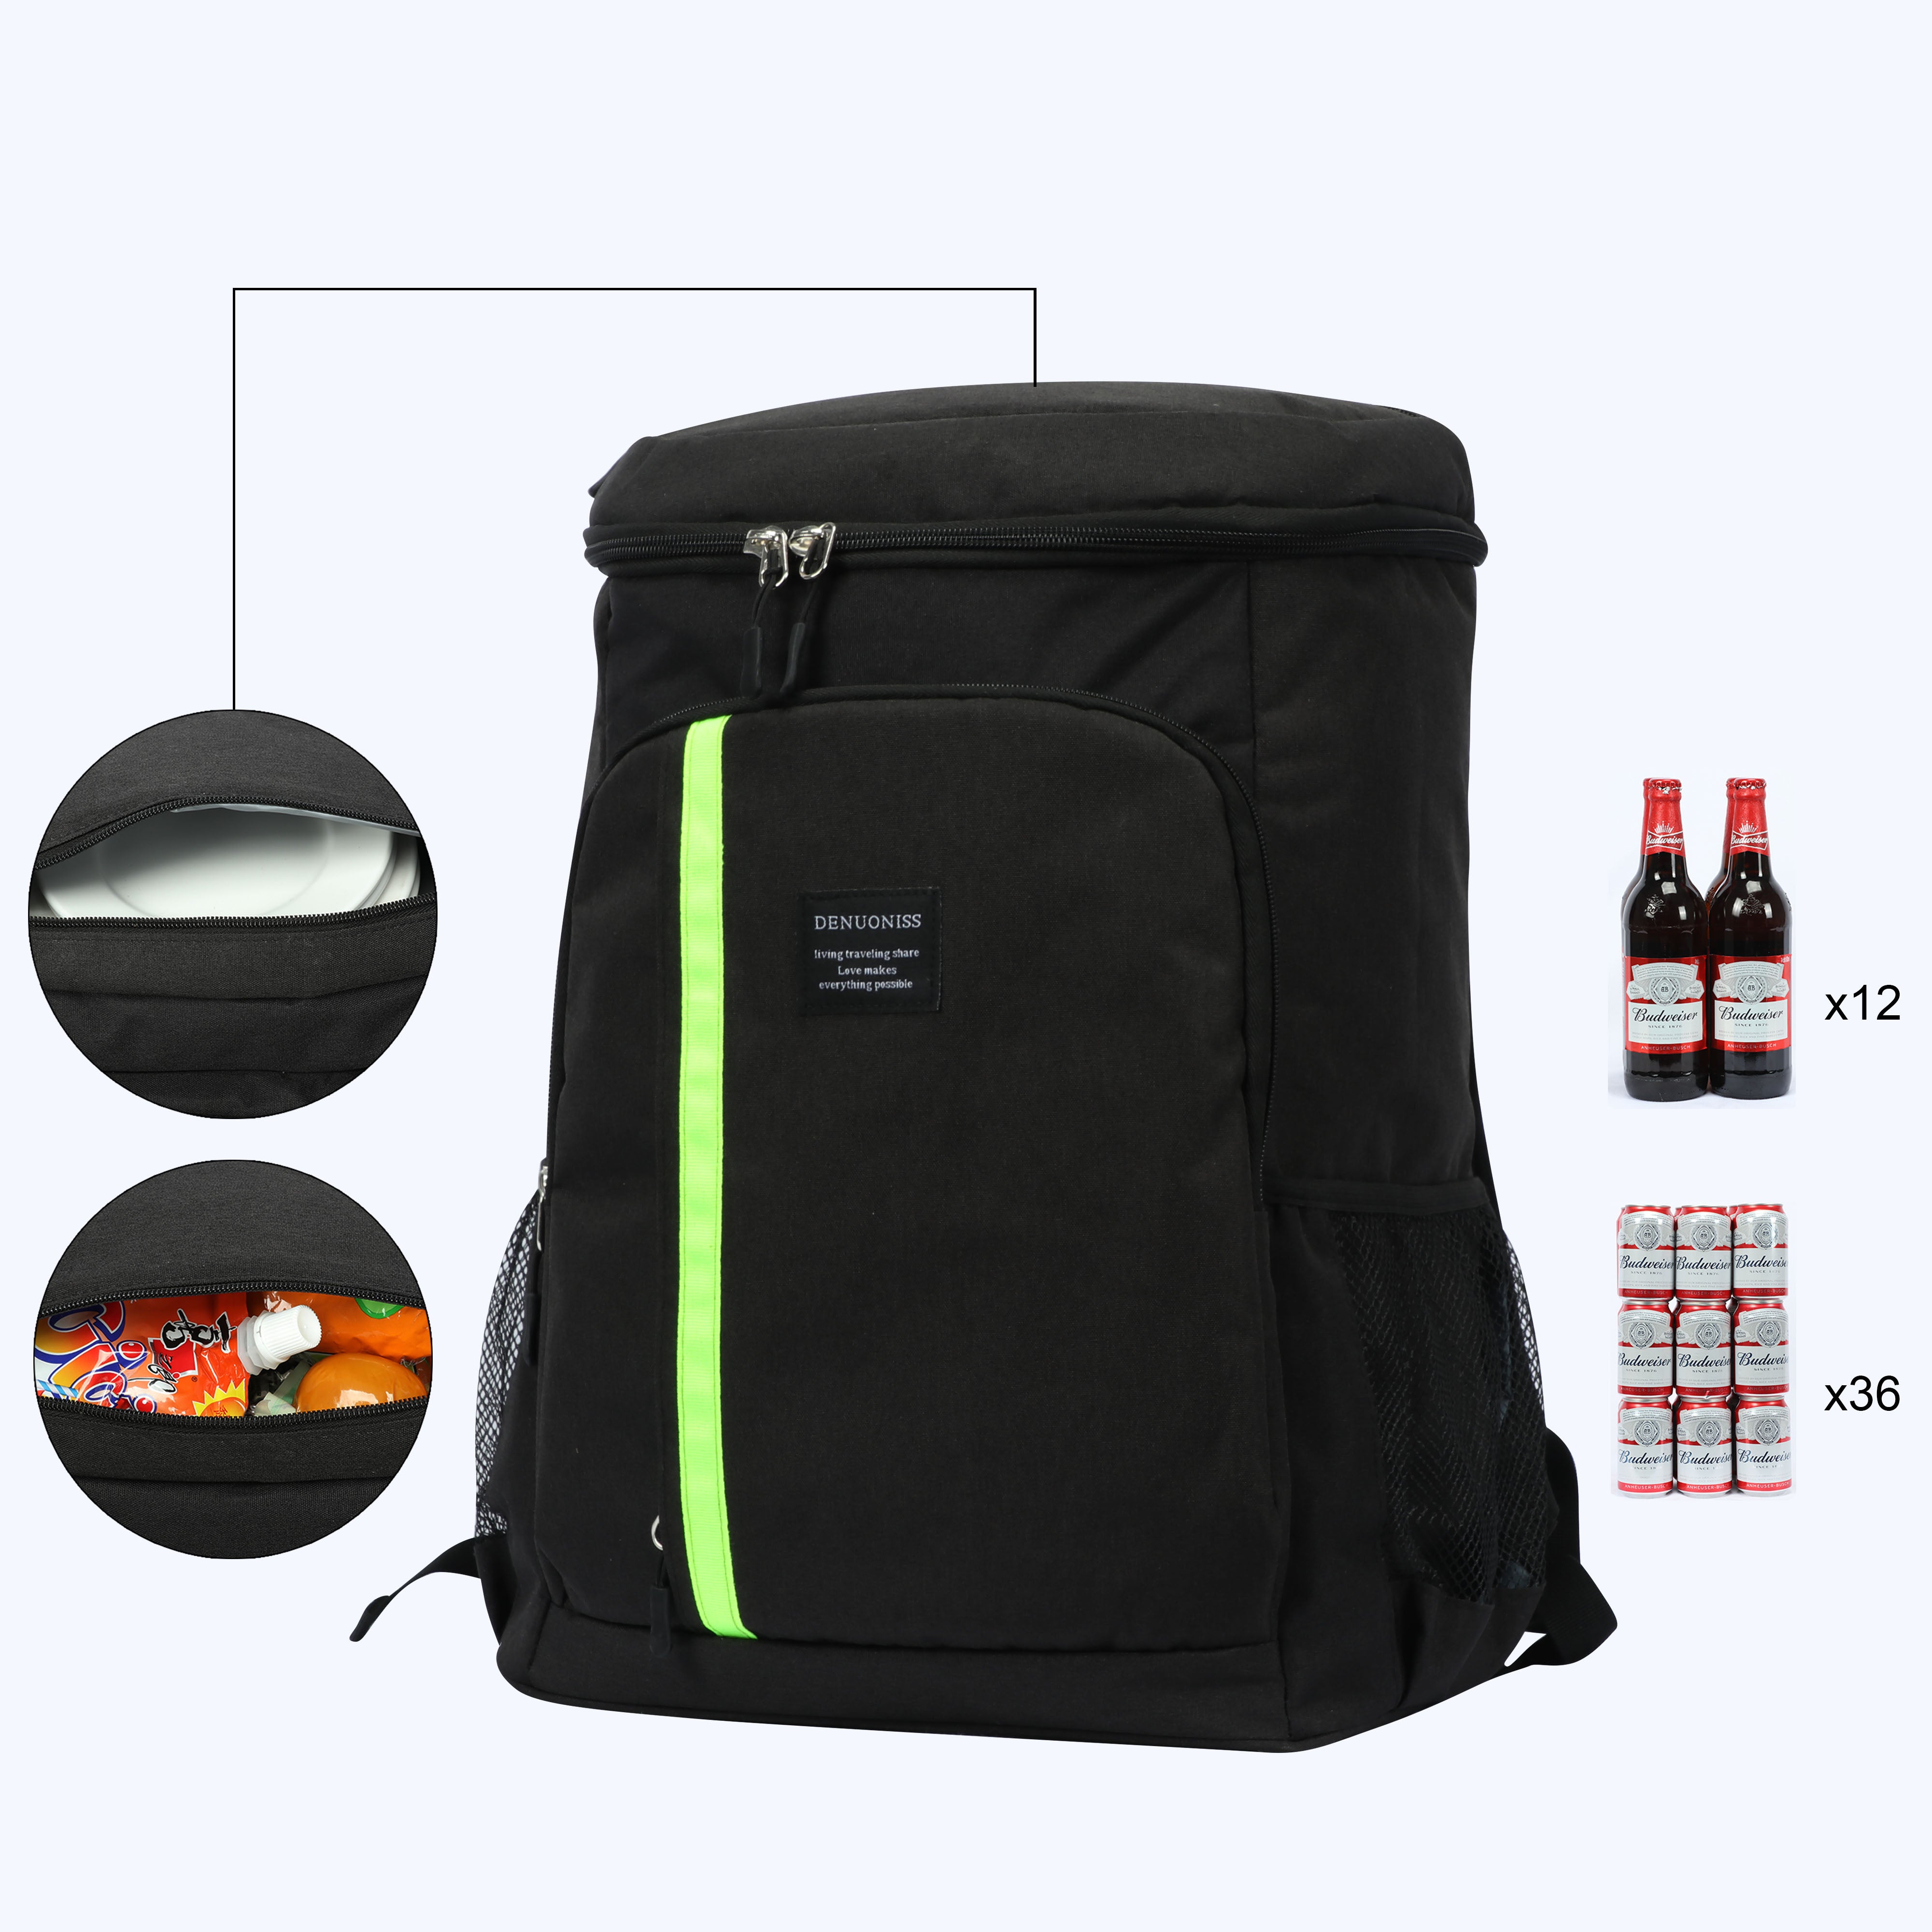 30L Large Storage Cooler Bag Women Bag Ice Pack Waterproof Cooler Bag For Beer Insulation Thermal Bag  With Bottle Opener